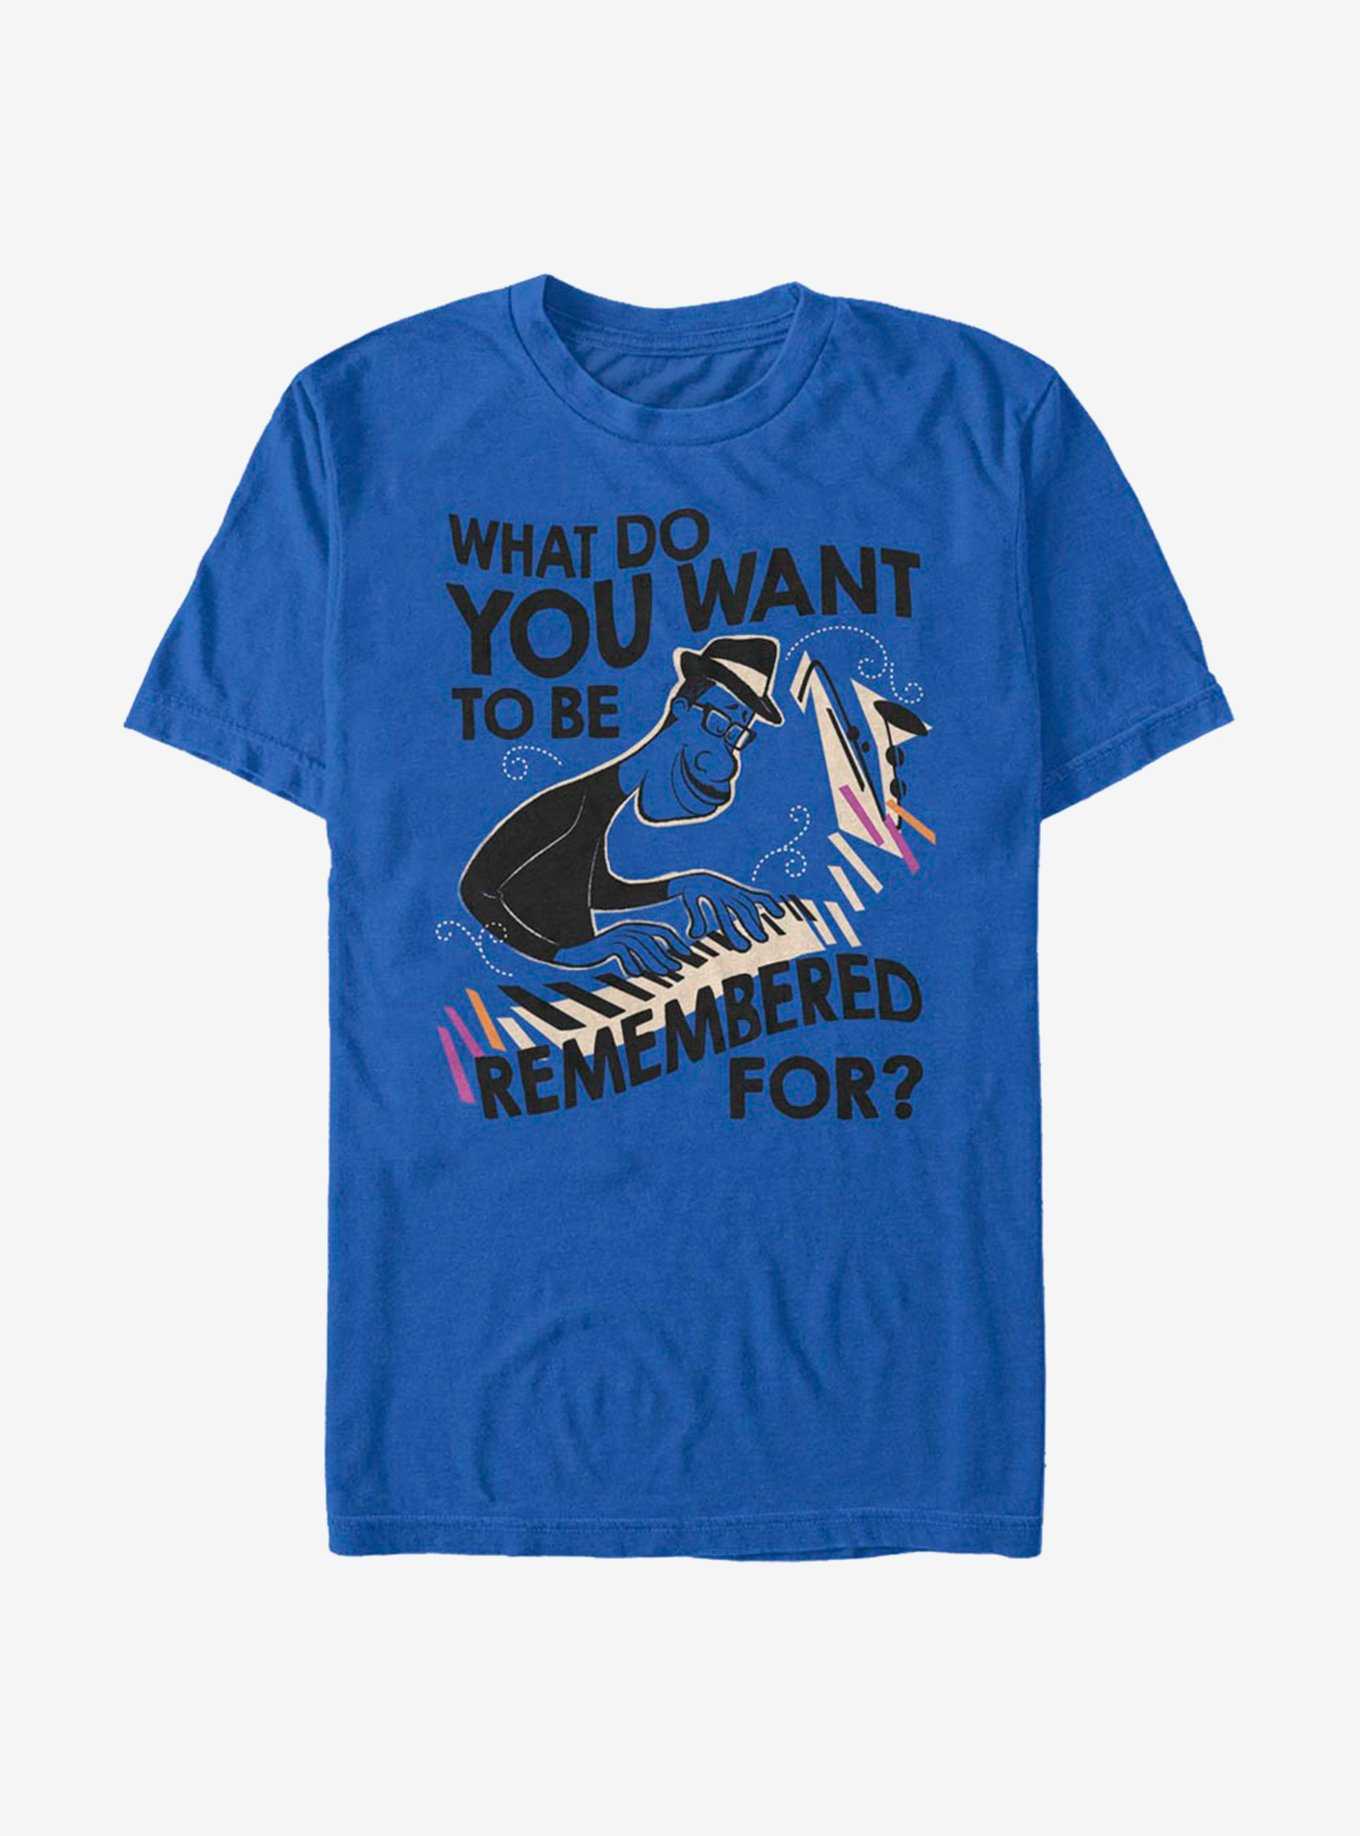 Disney Pixar Soul Remembered For T-Shirt, , hi-res